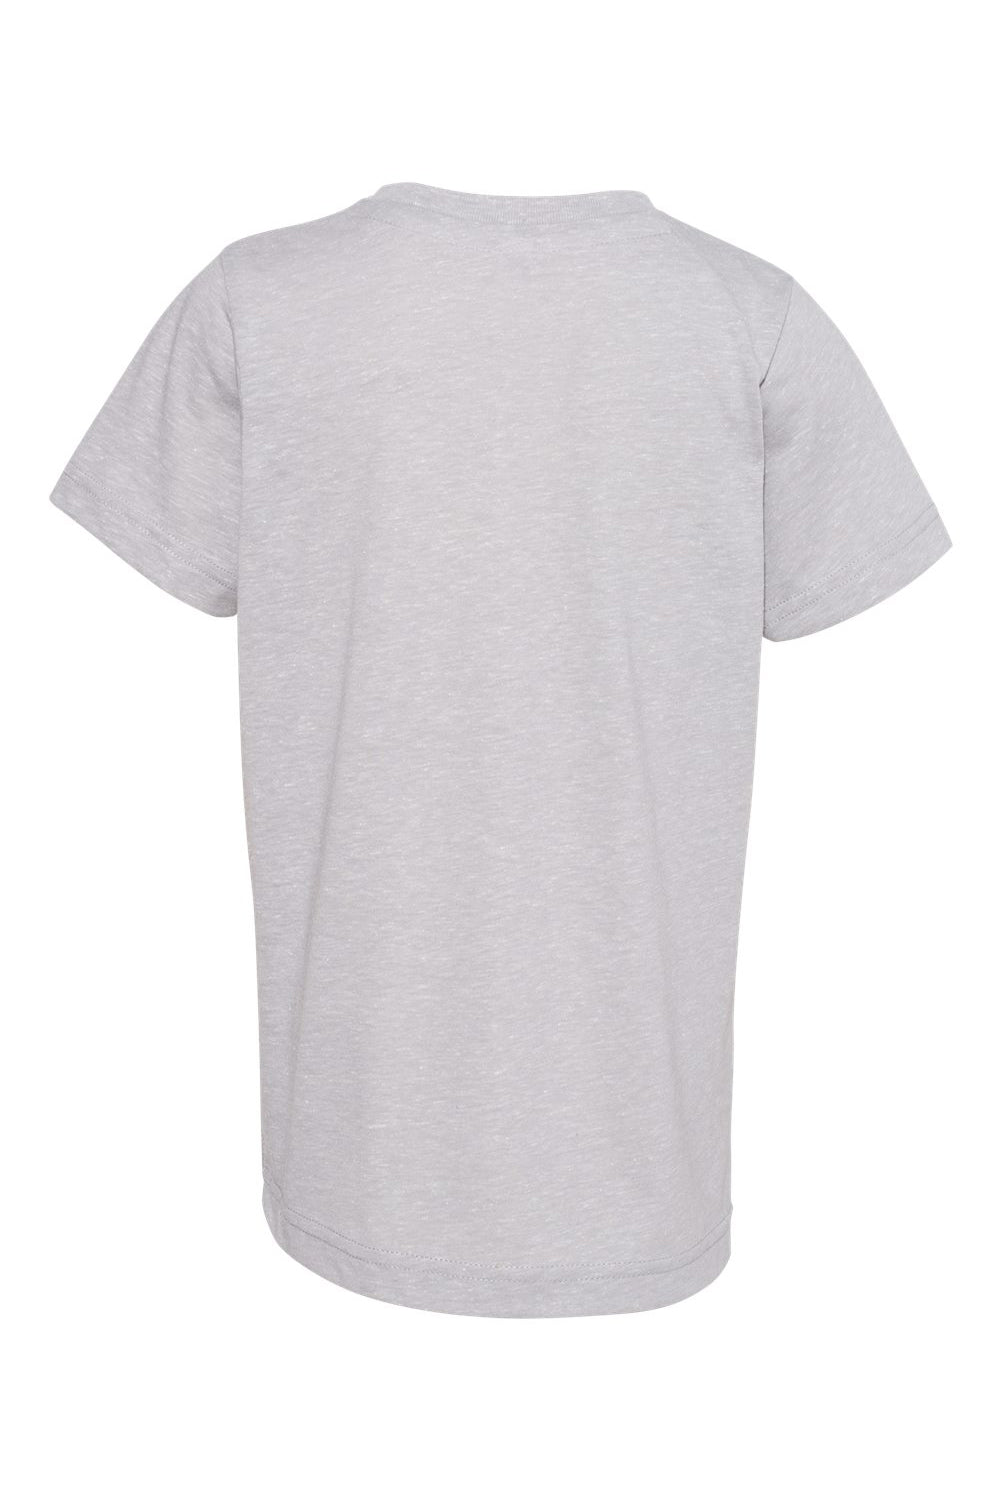 LAT 6191 Youth Harborside Melange Short Sleeve Crewneck T-Shirt Grey Flat Back